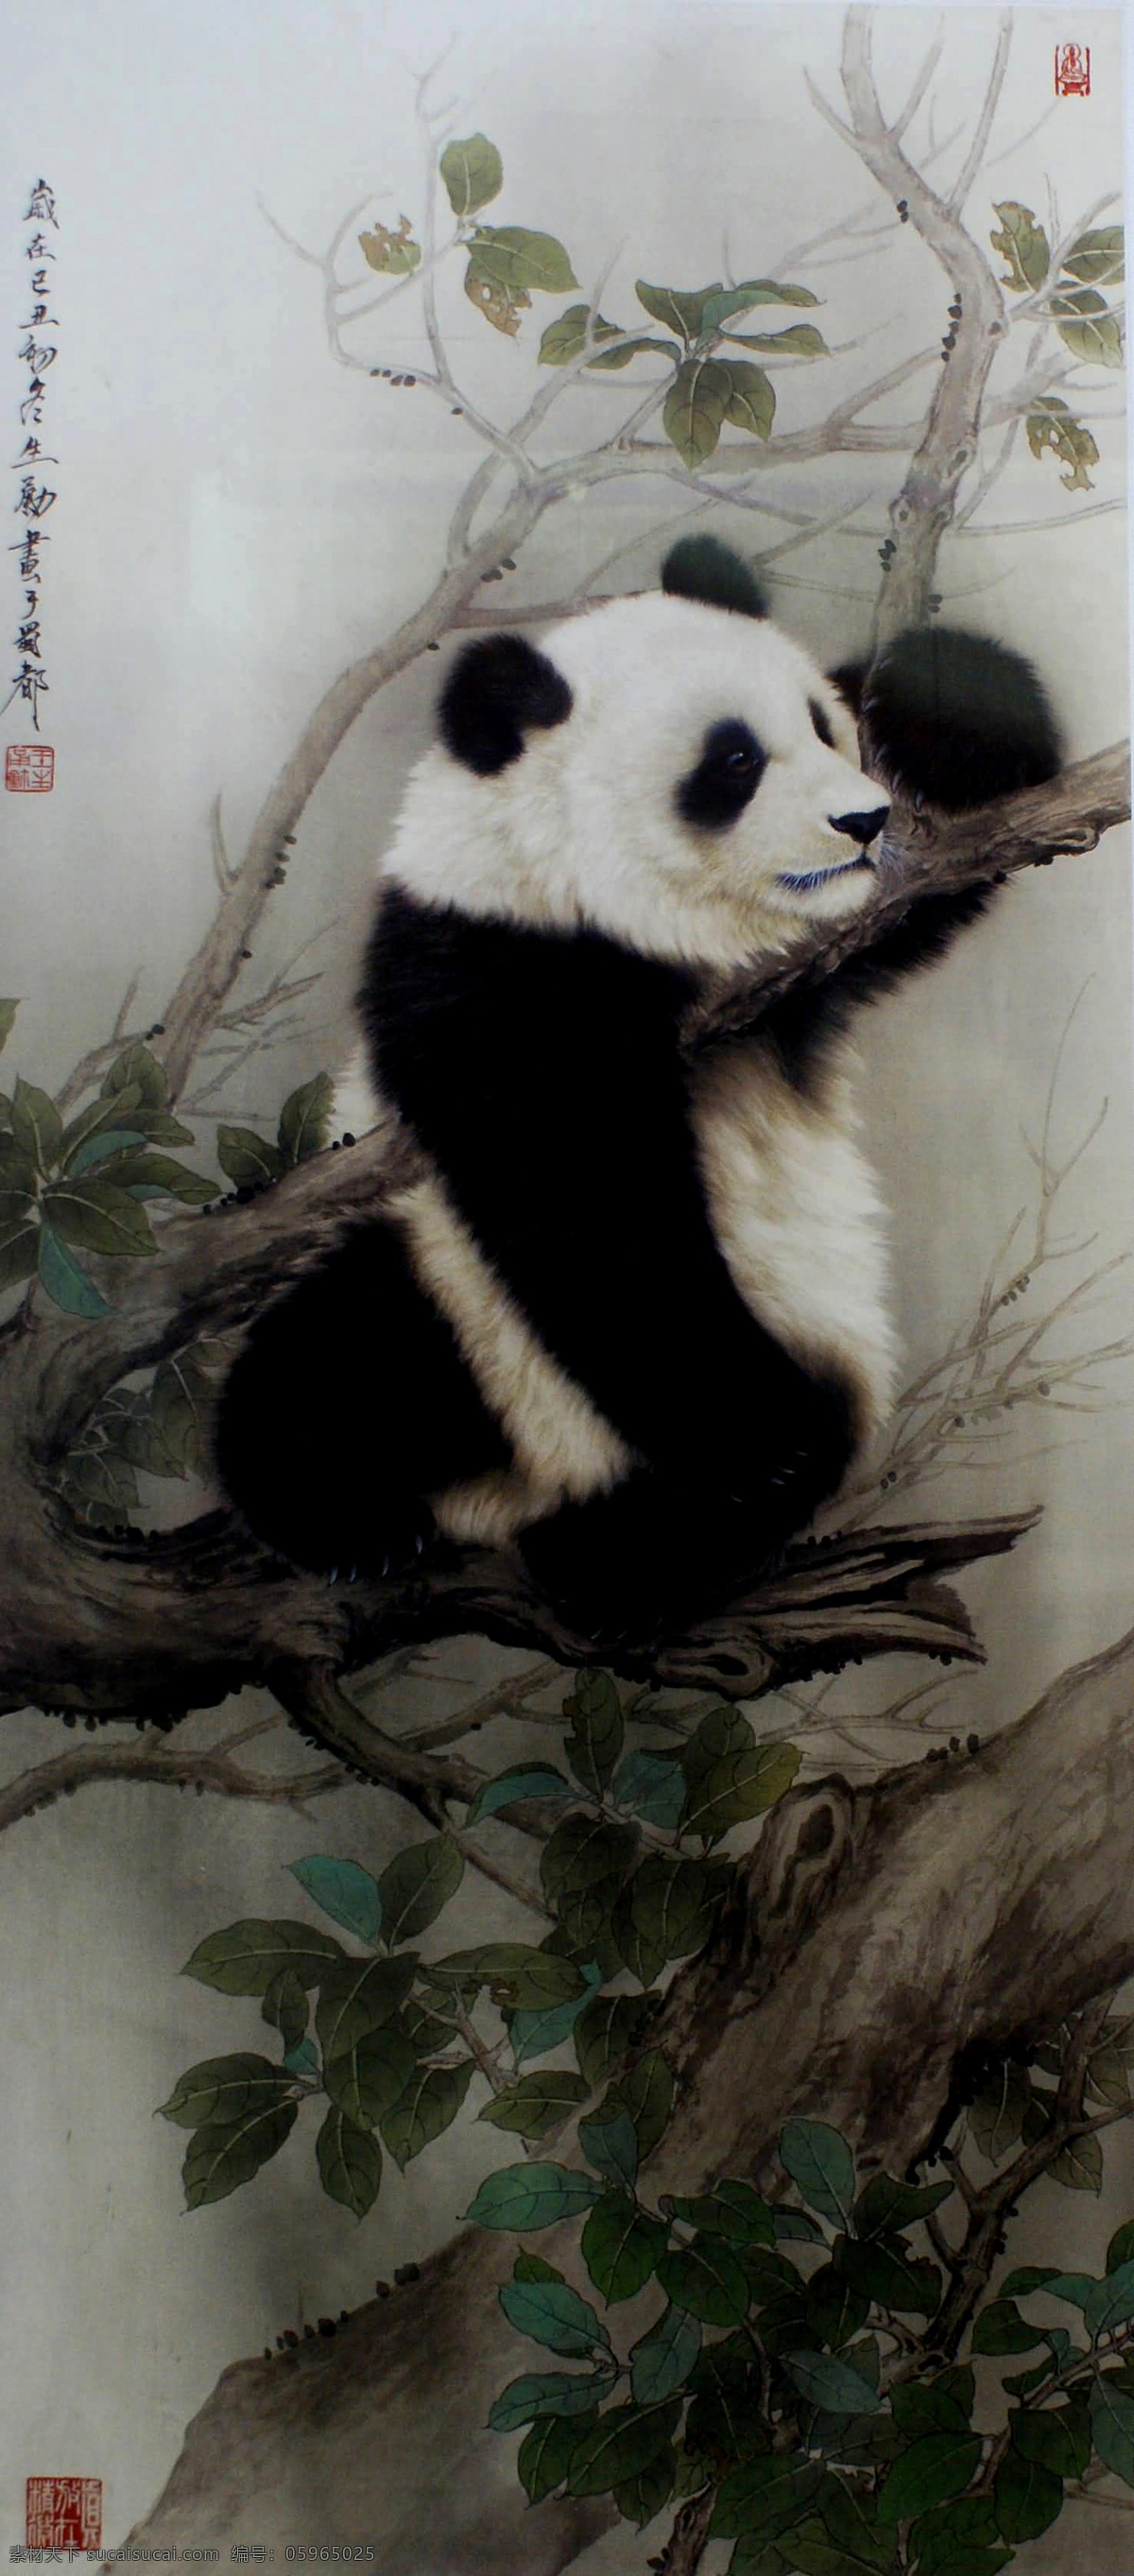 顽皮 熊猫 国宝 树干 树枝 绿叶 古典 国画 王申勇 工笔 花鸟 动物 名家工笔 绘画书法 文化艺术